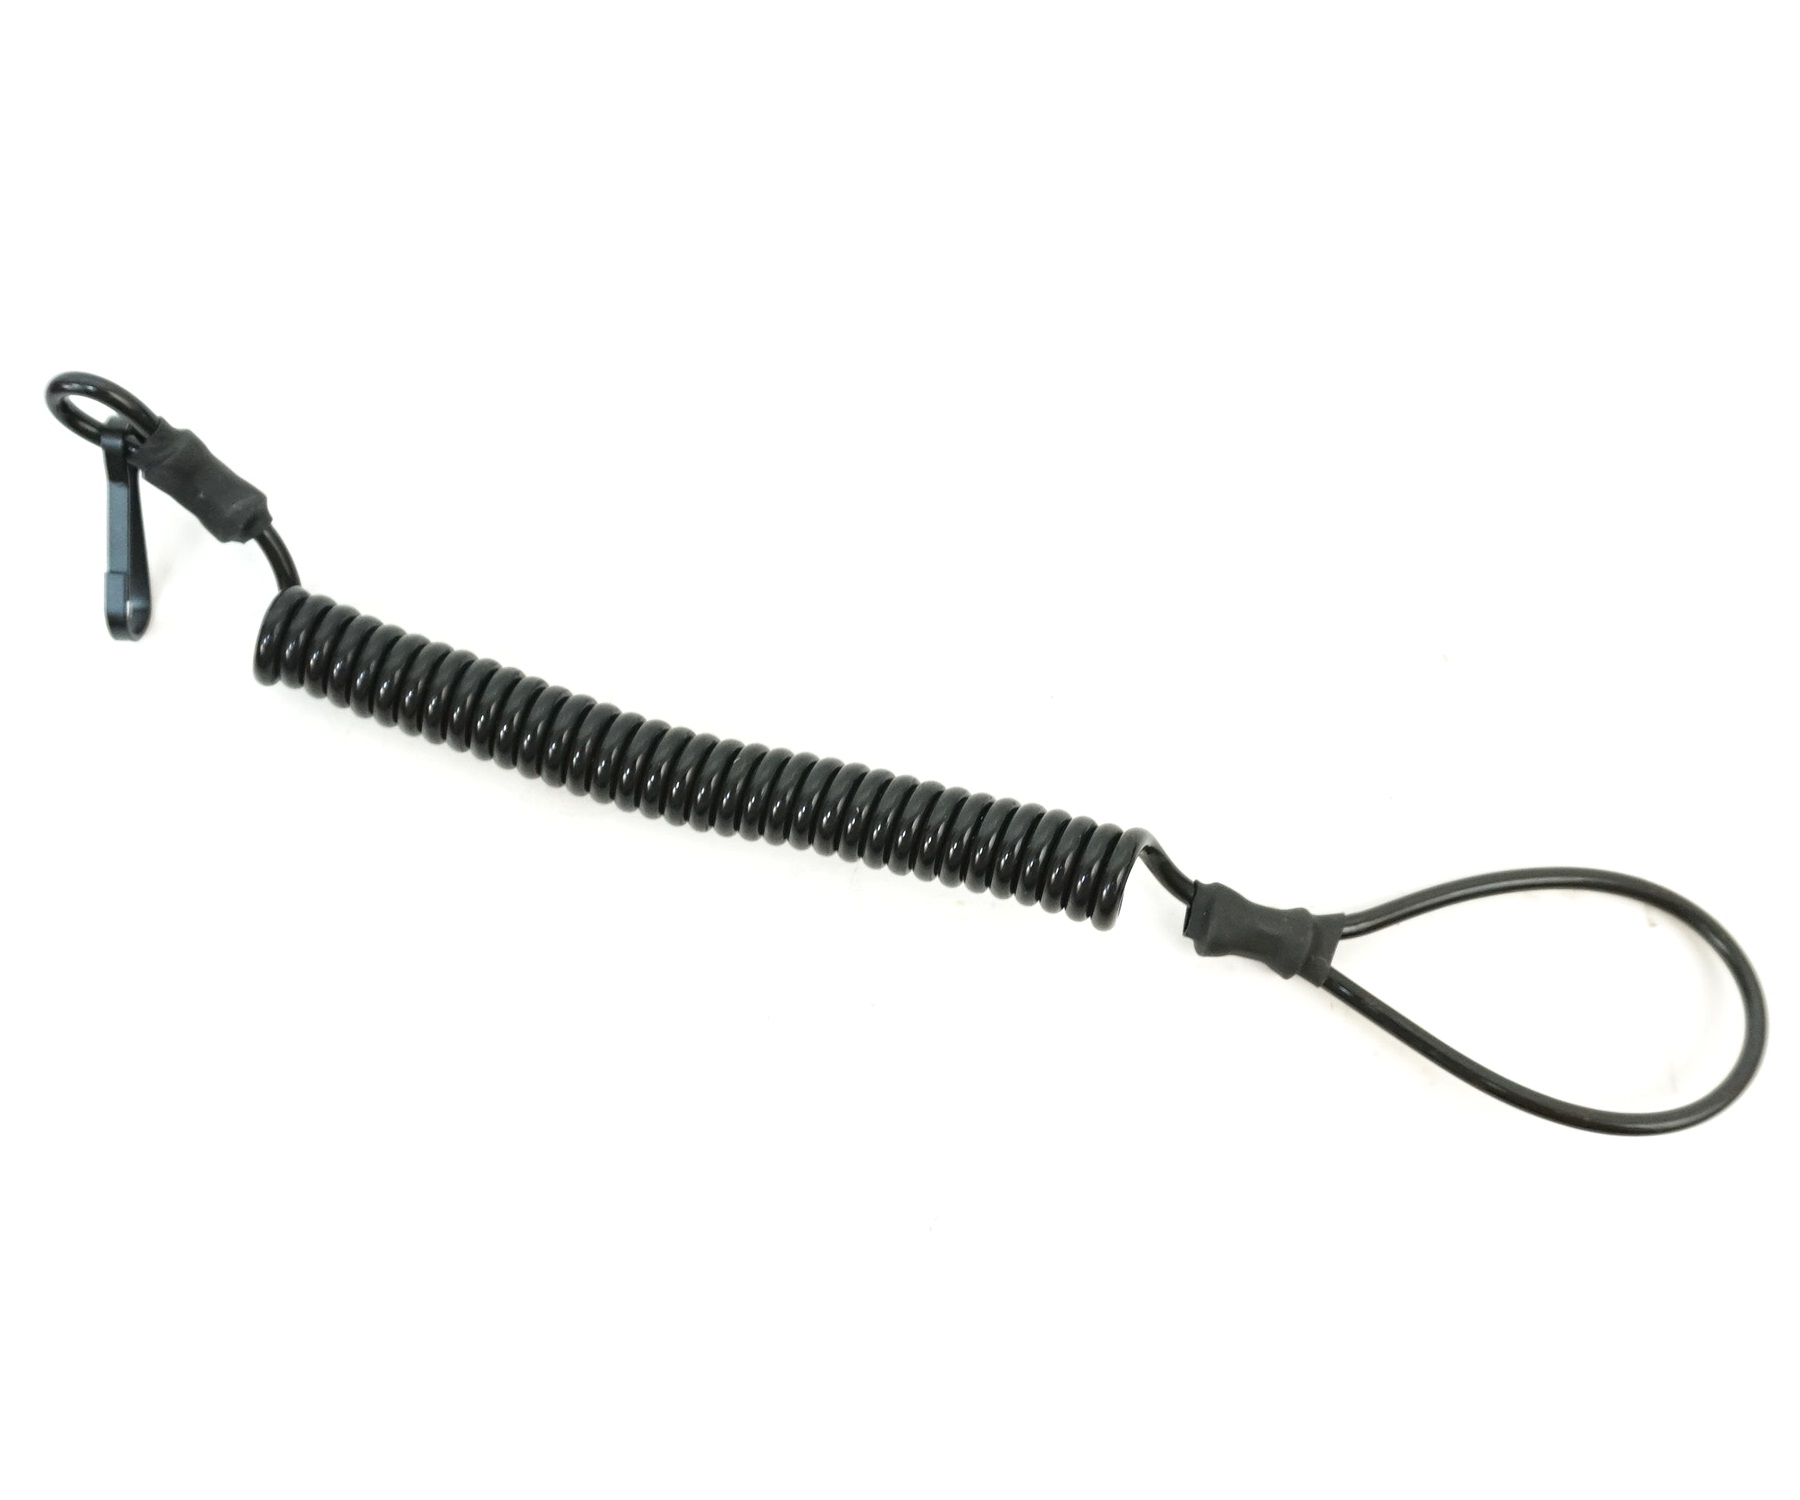  спиральный 3,7 мм (металл. страховочный ремень) черный  .